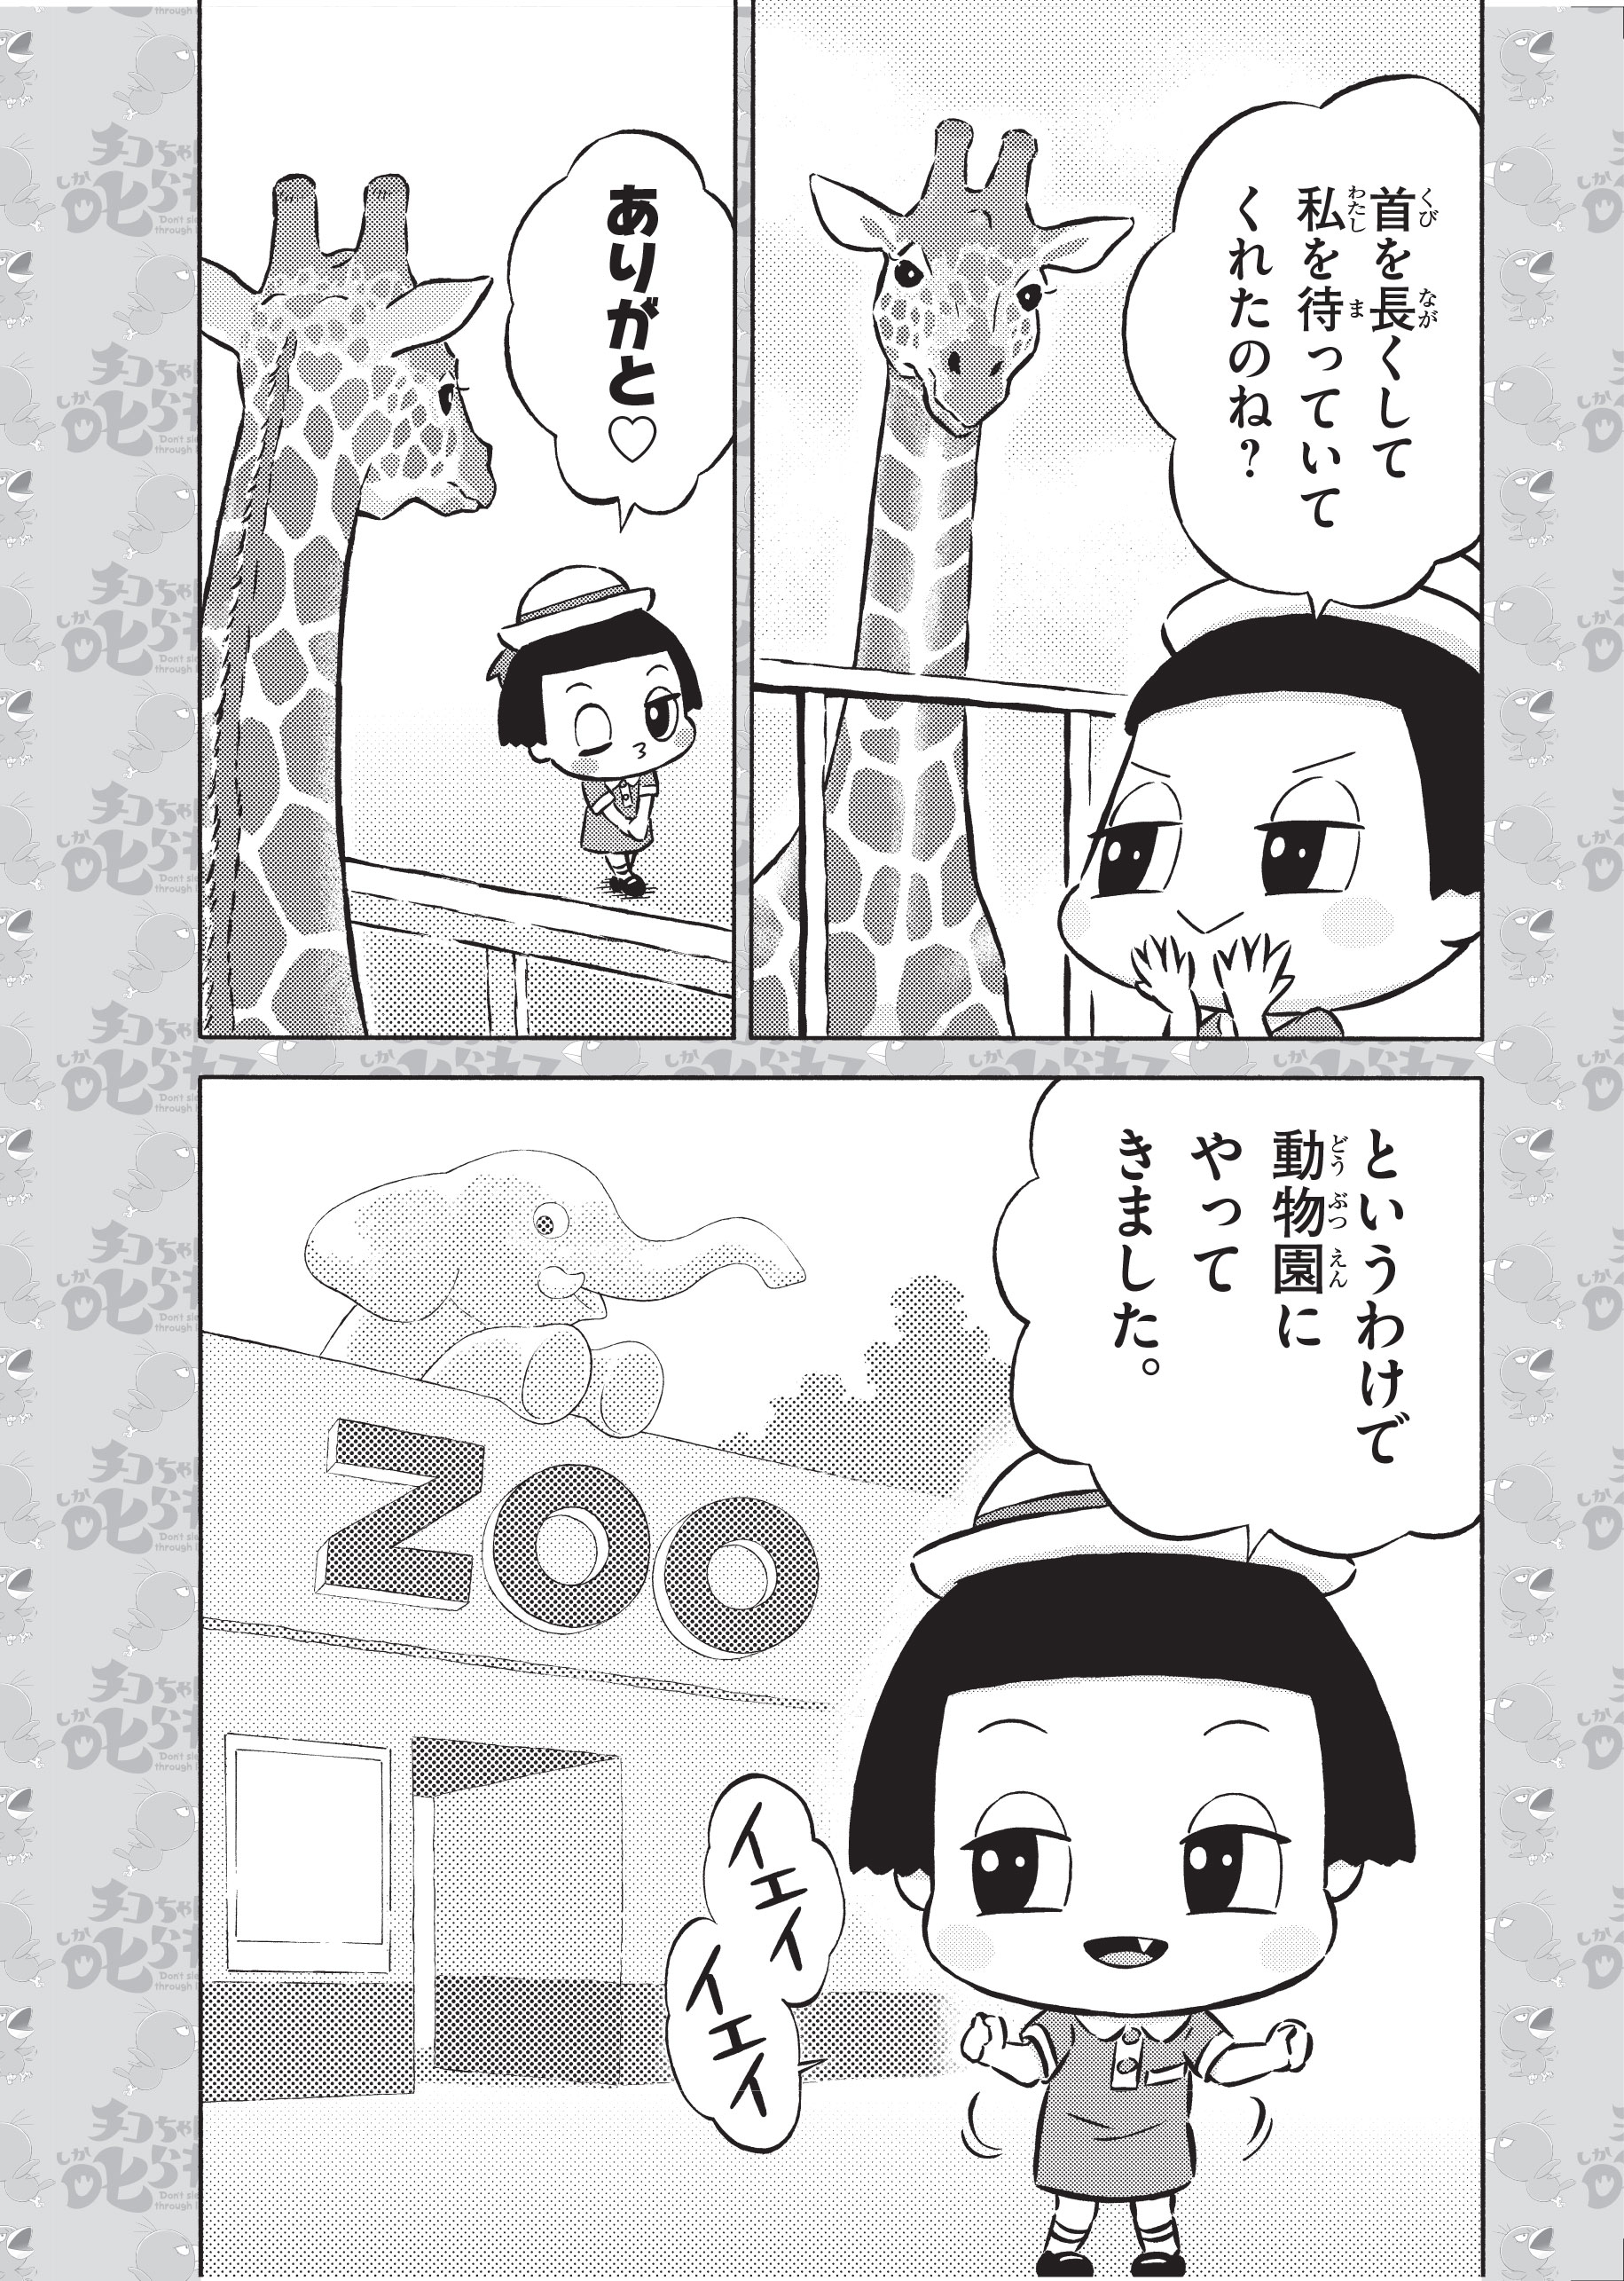 チコちゃん_動物園_P02